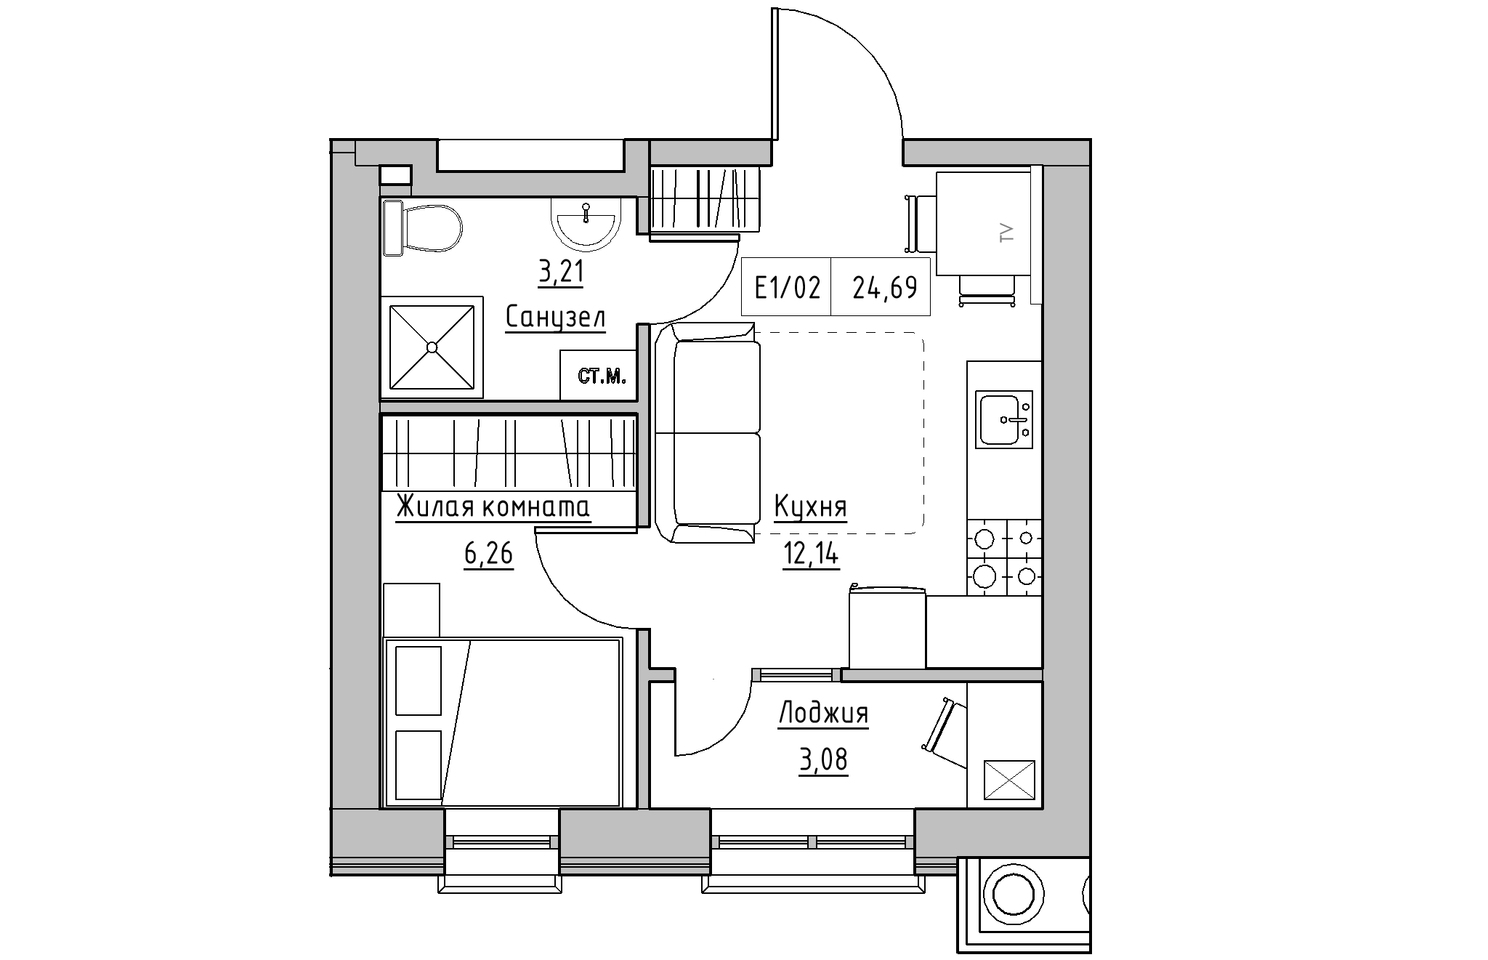 Планування 1-к квартира площею 24.69м2, KS-010-01/0002.